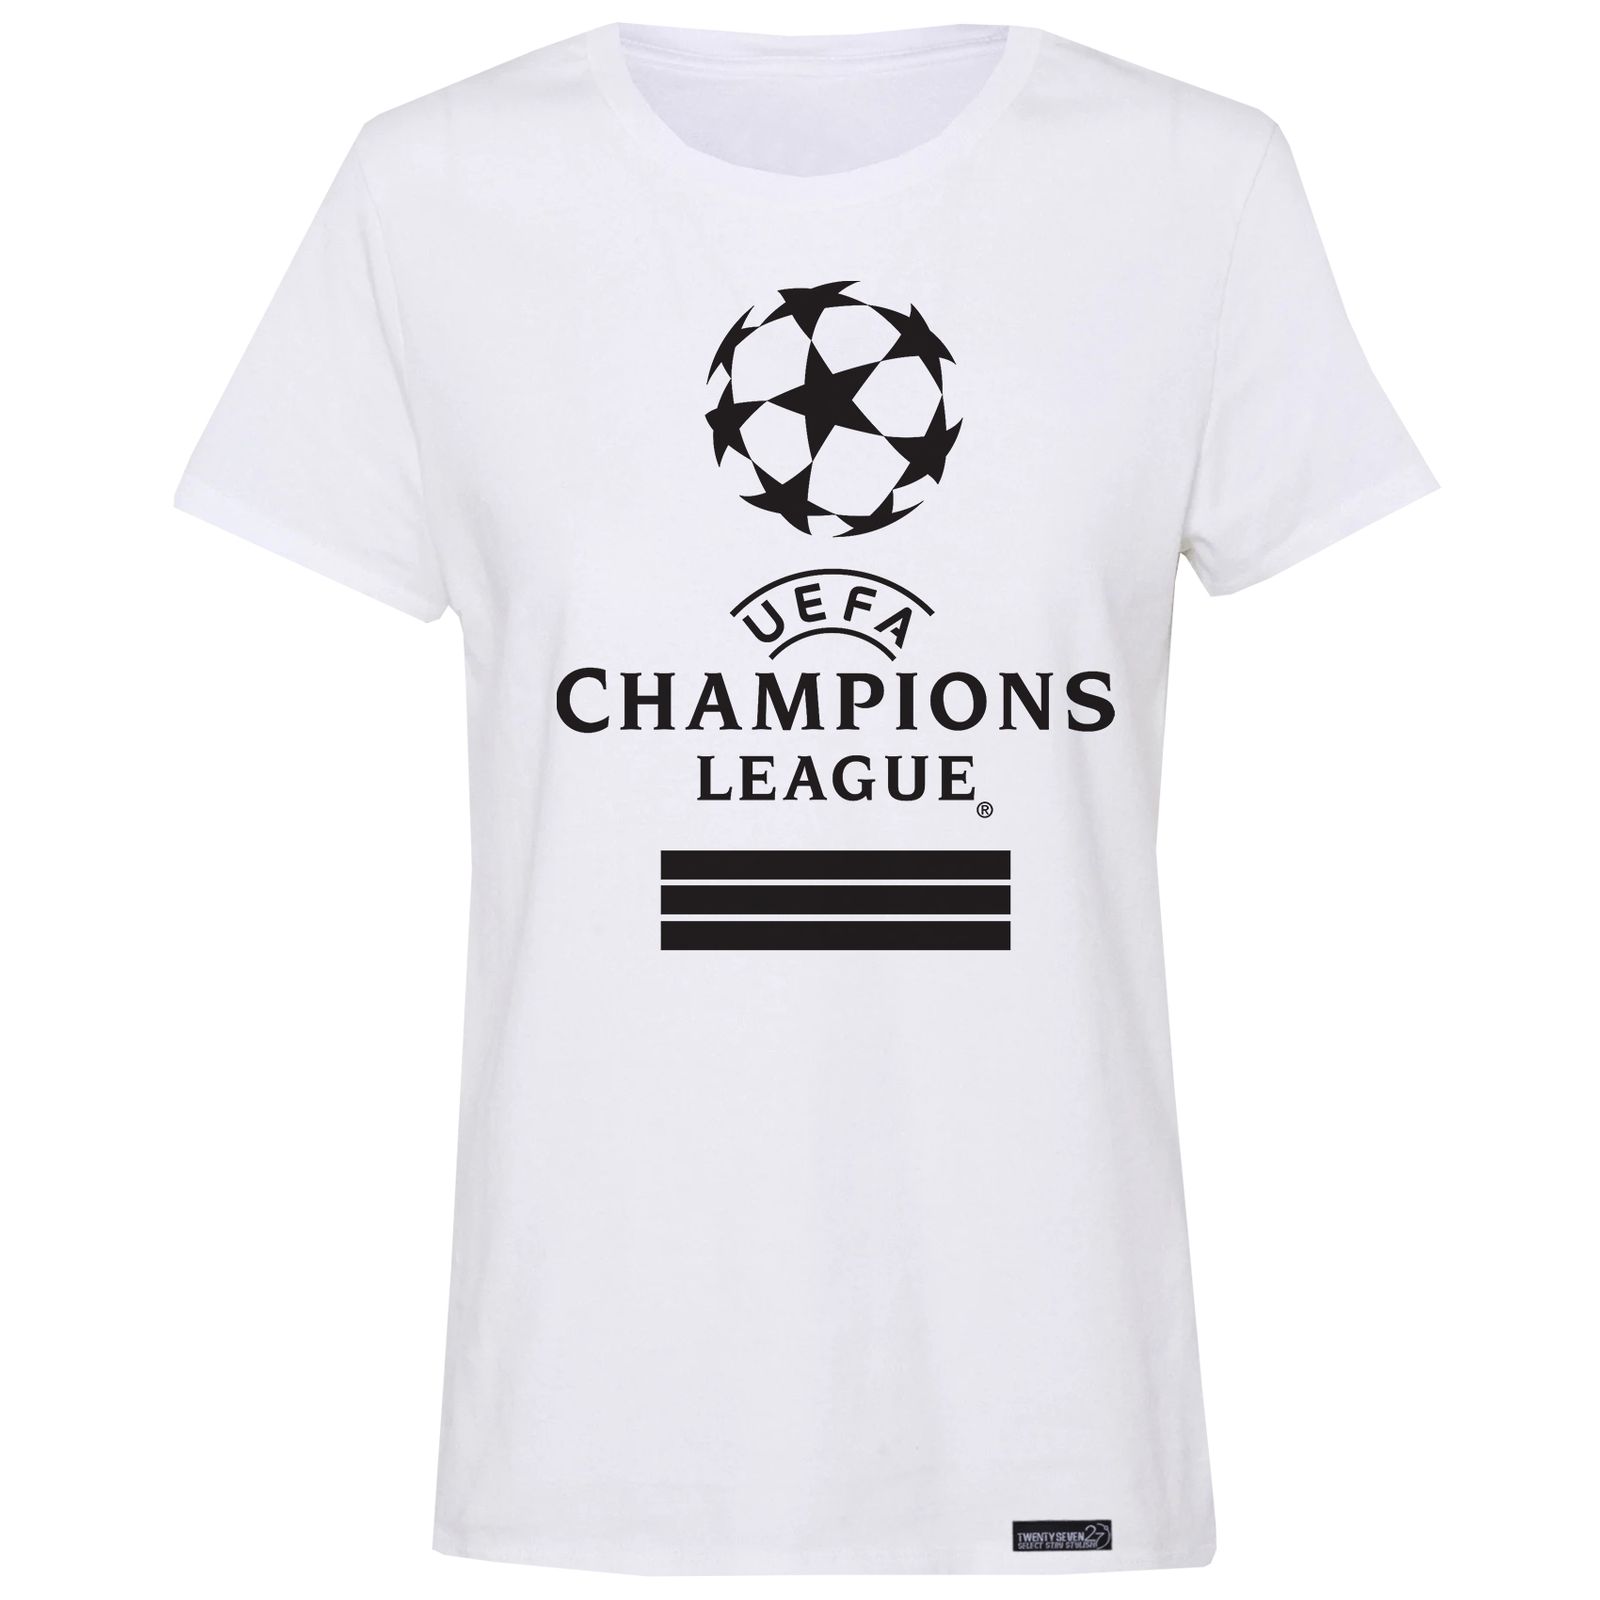 تی شرت آستین کوتاه زنانه 27 مدل Champions League کد MH25 -  - 1